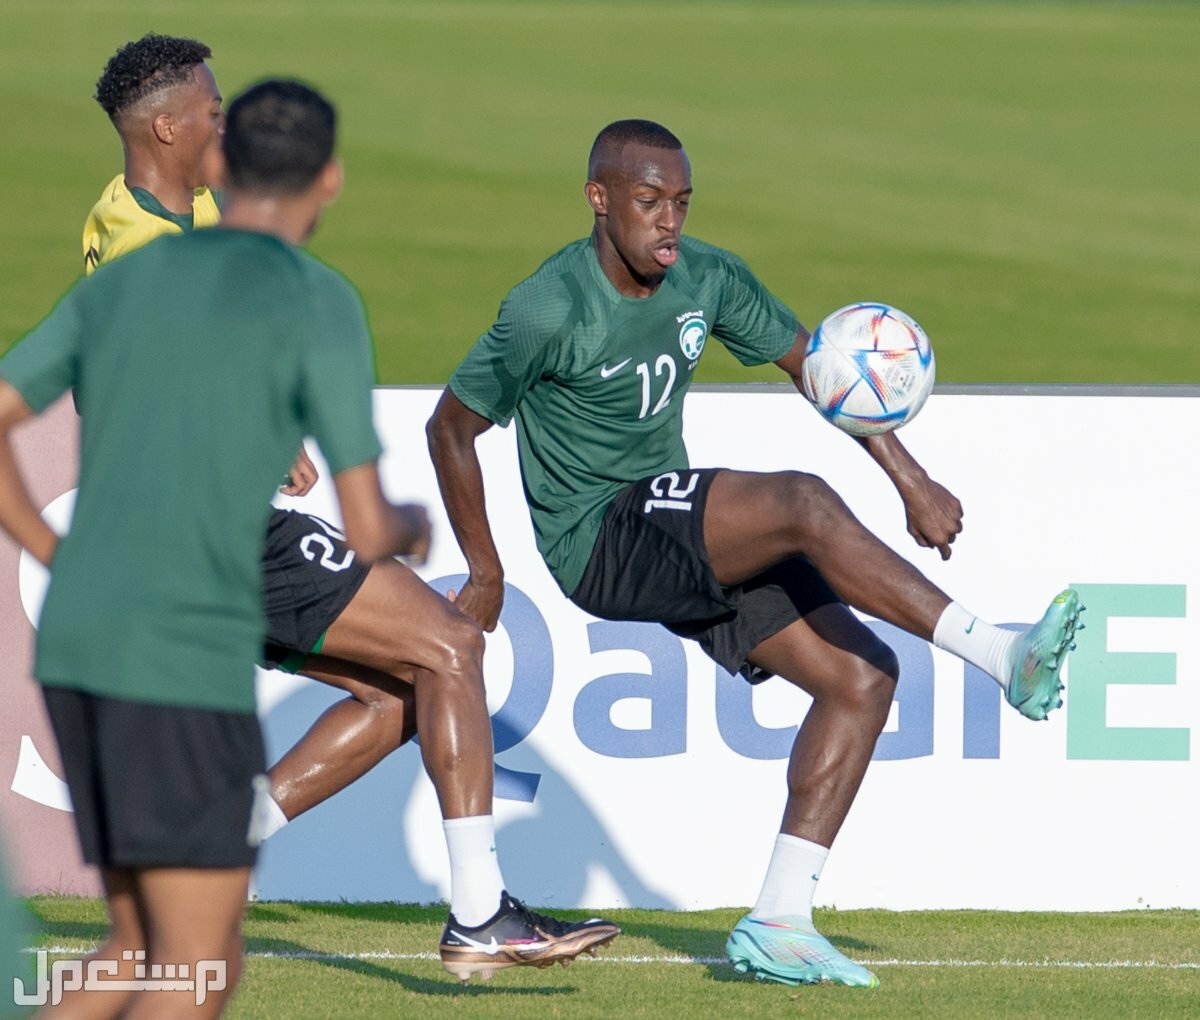 السعودية وبولندا مشاهدة مجانية لمباريات كاس العالم 2022 في الأردن المنتخب السعودي